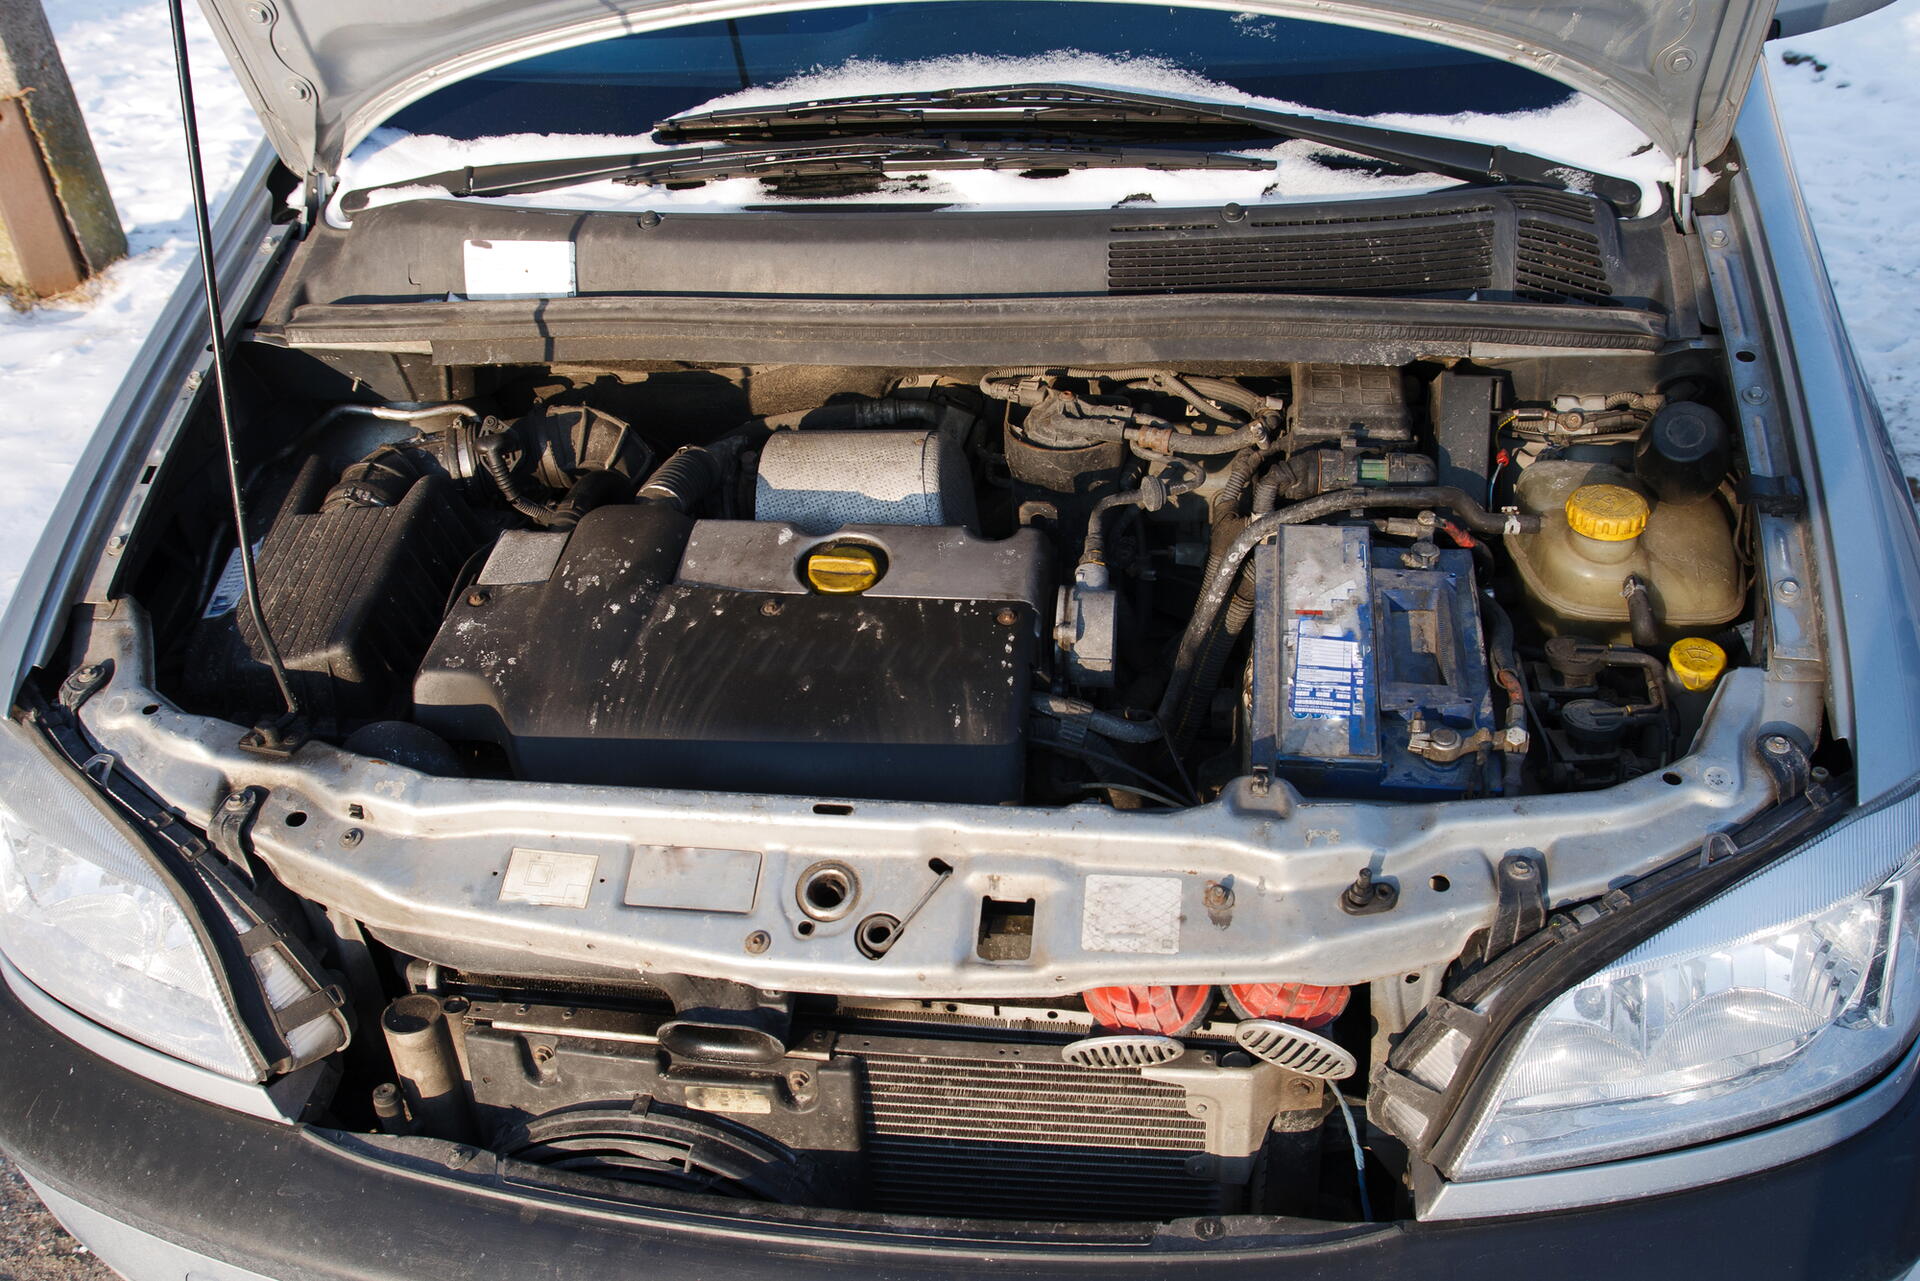 Zamrzlá nafta v autě – co dělat a jak se tomu vyvarovat?